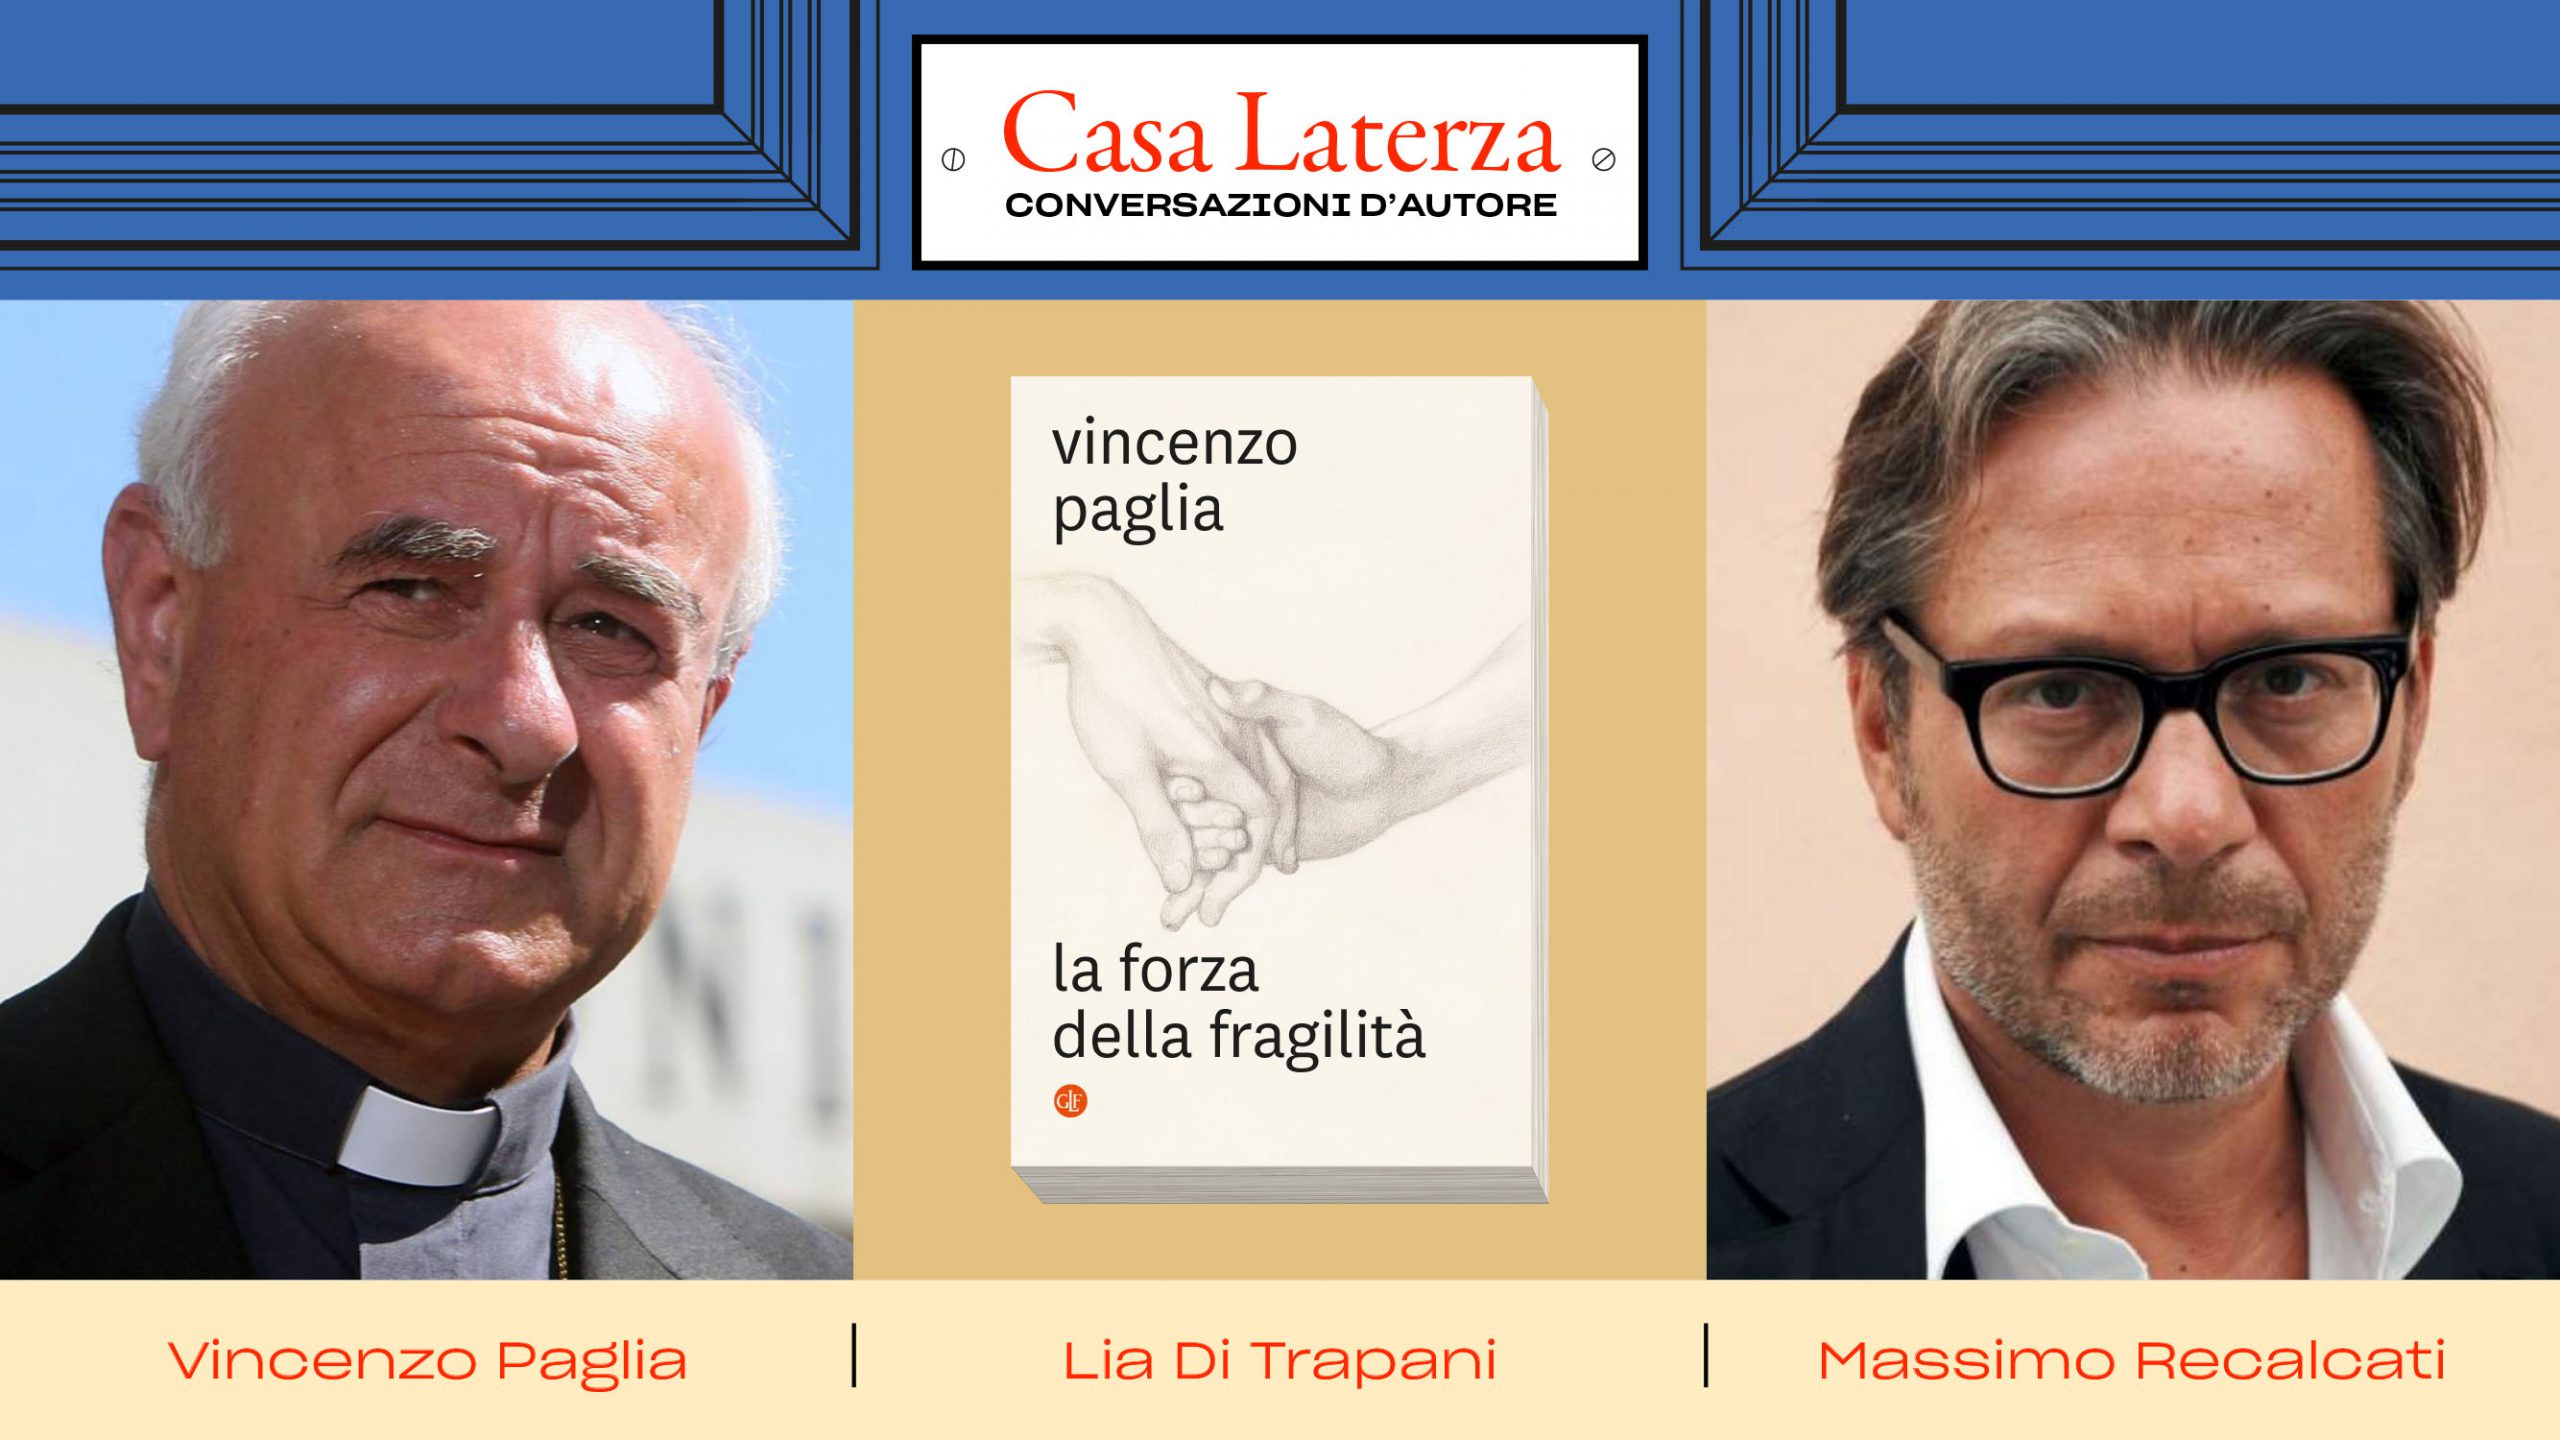 #CasaLaterza: Vincenzo Paglia dialoga con Massimo Recalcati